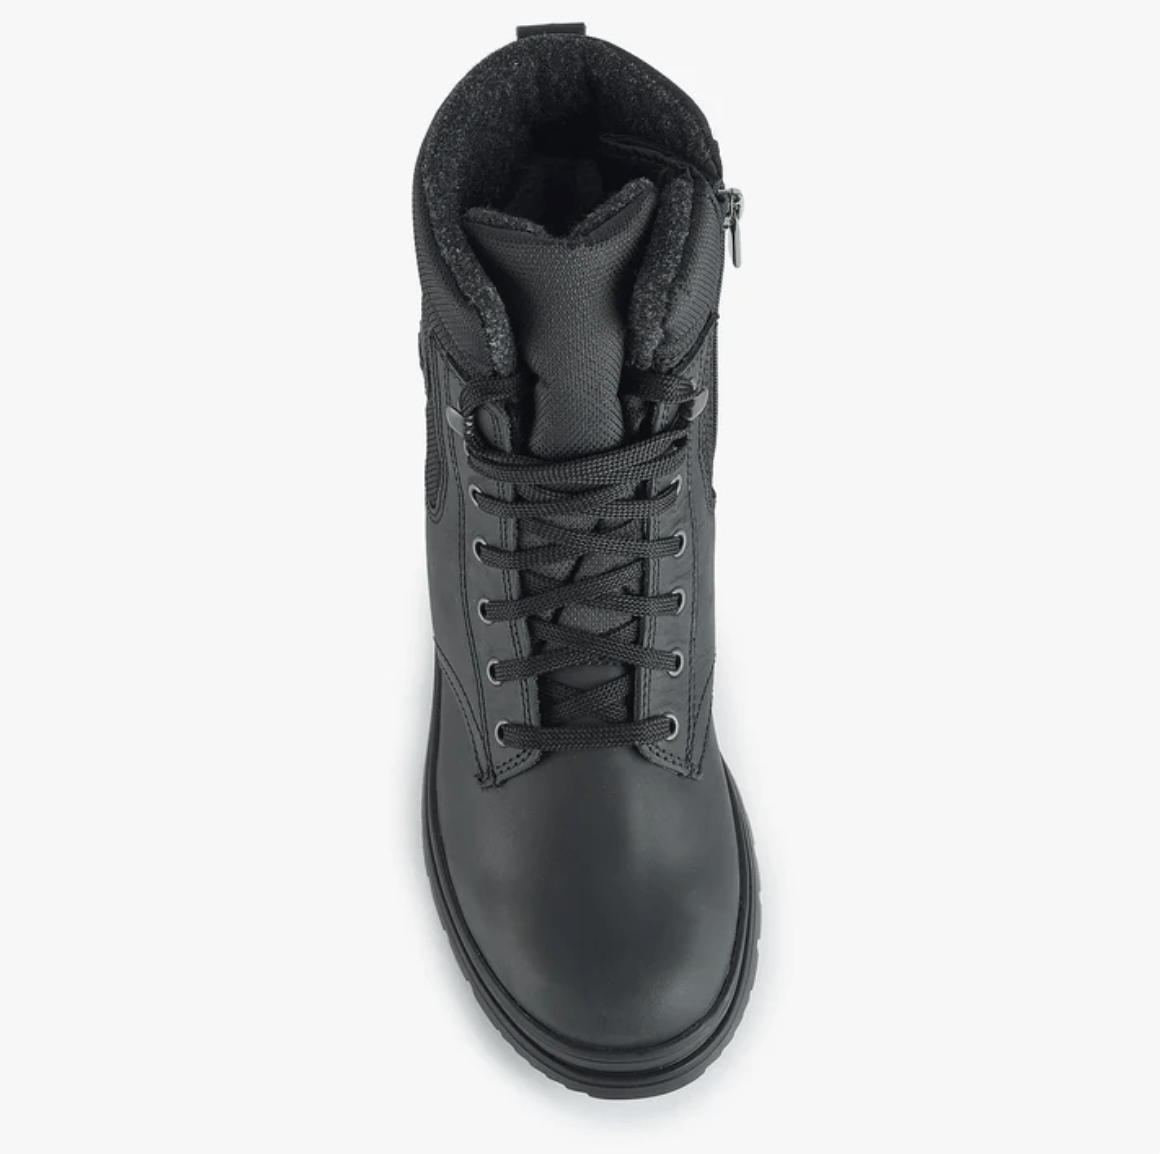 OLANG SANTIAGO Men's winter boots - Boutique Bubbles